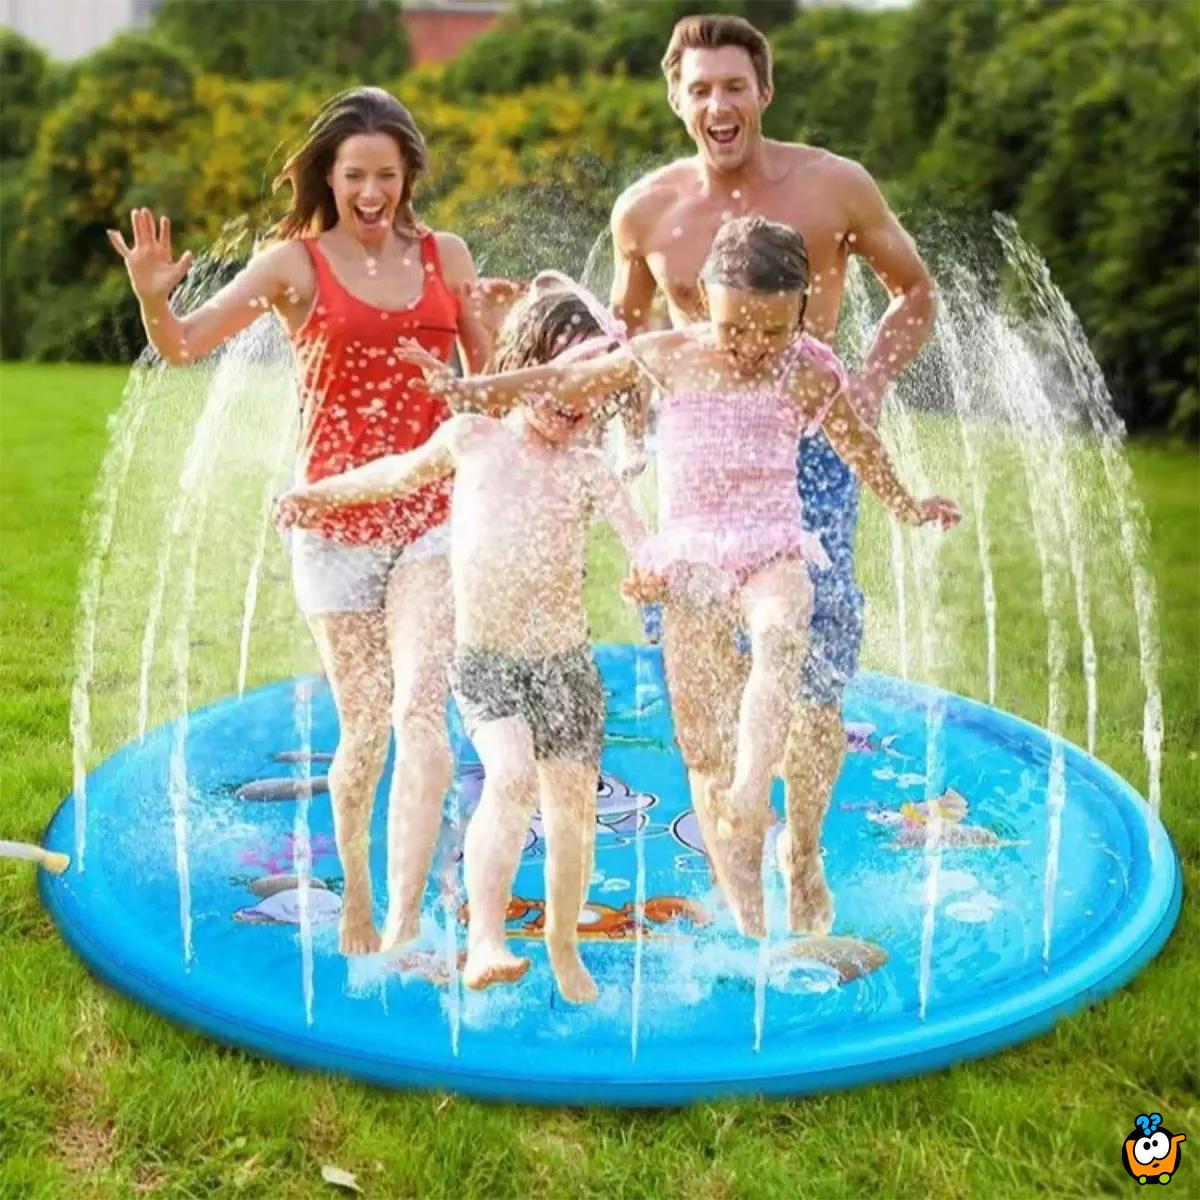 Sprinkler Pad - plitki bazen sa prskalicama za zabavno rashlađivanje